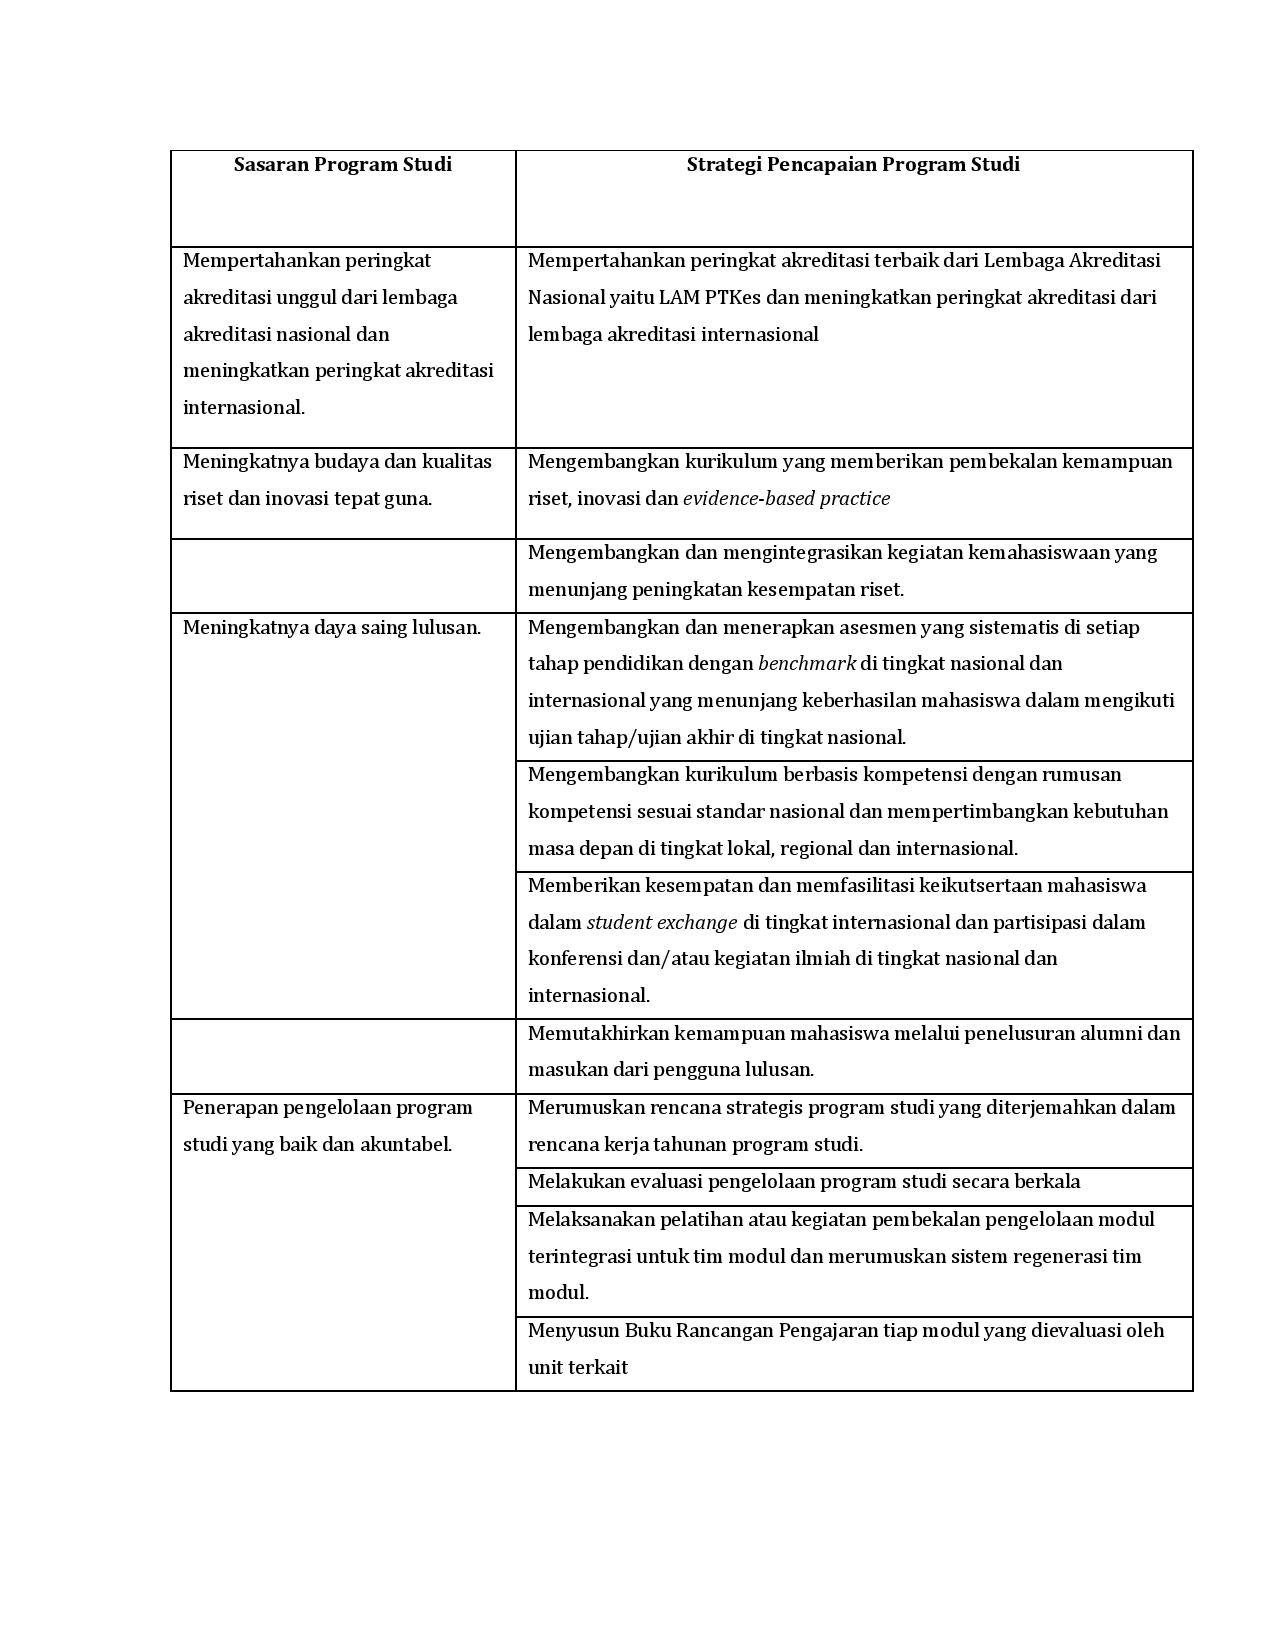 Sasaran dan Strategi Program Studi-page-001